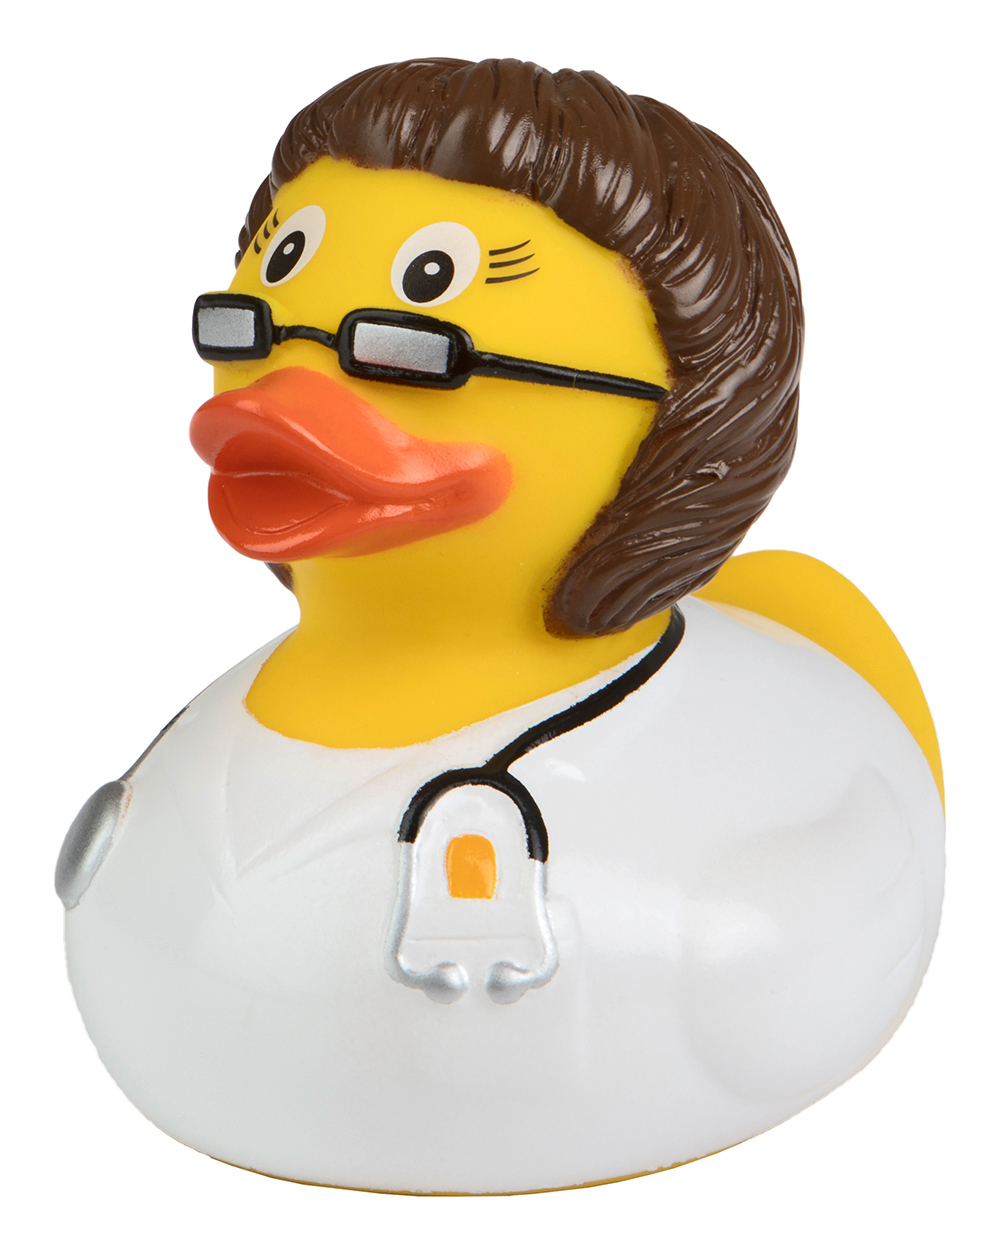 Squeaky duck doctor, brunette